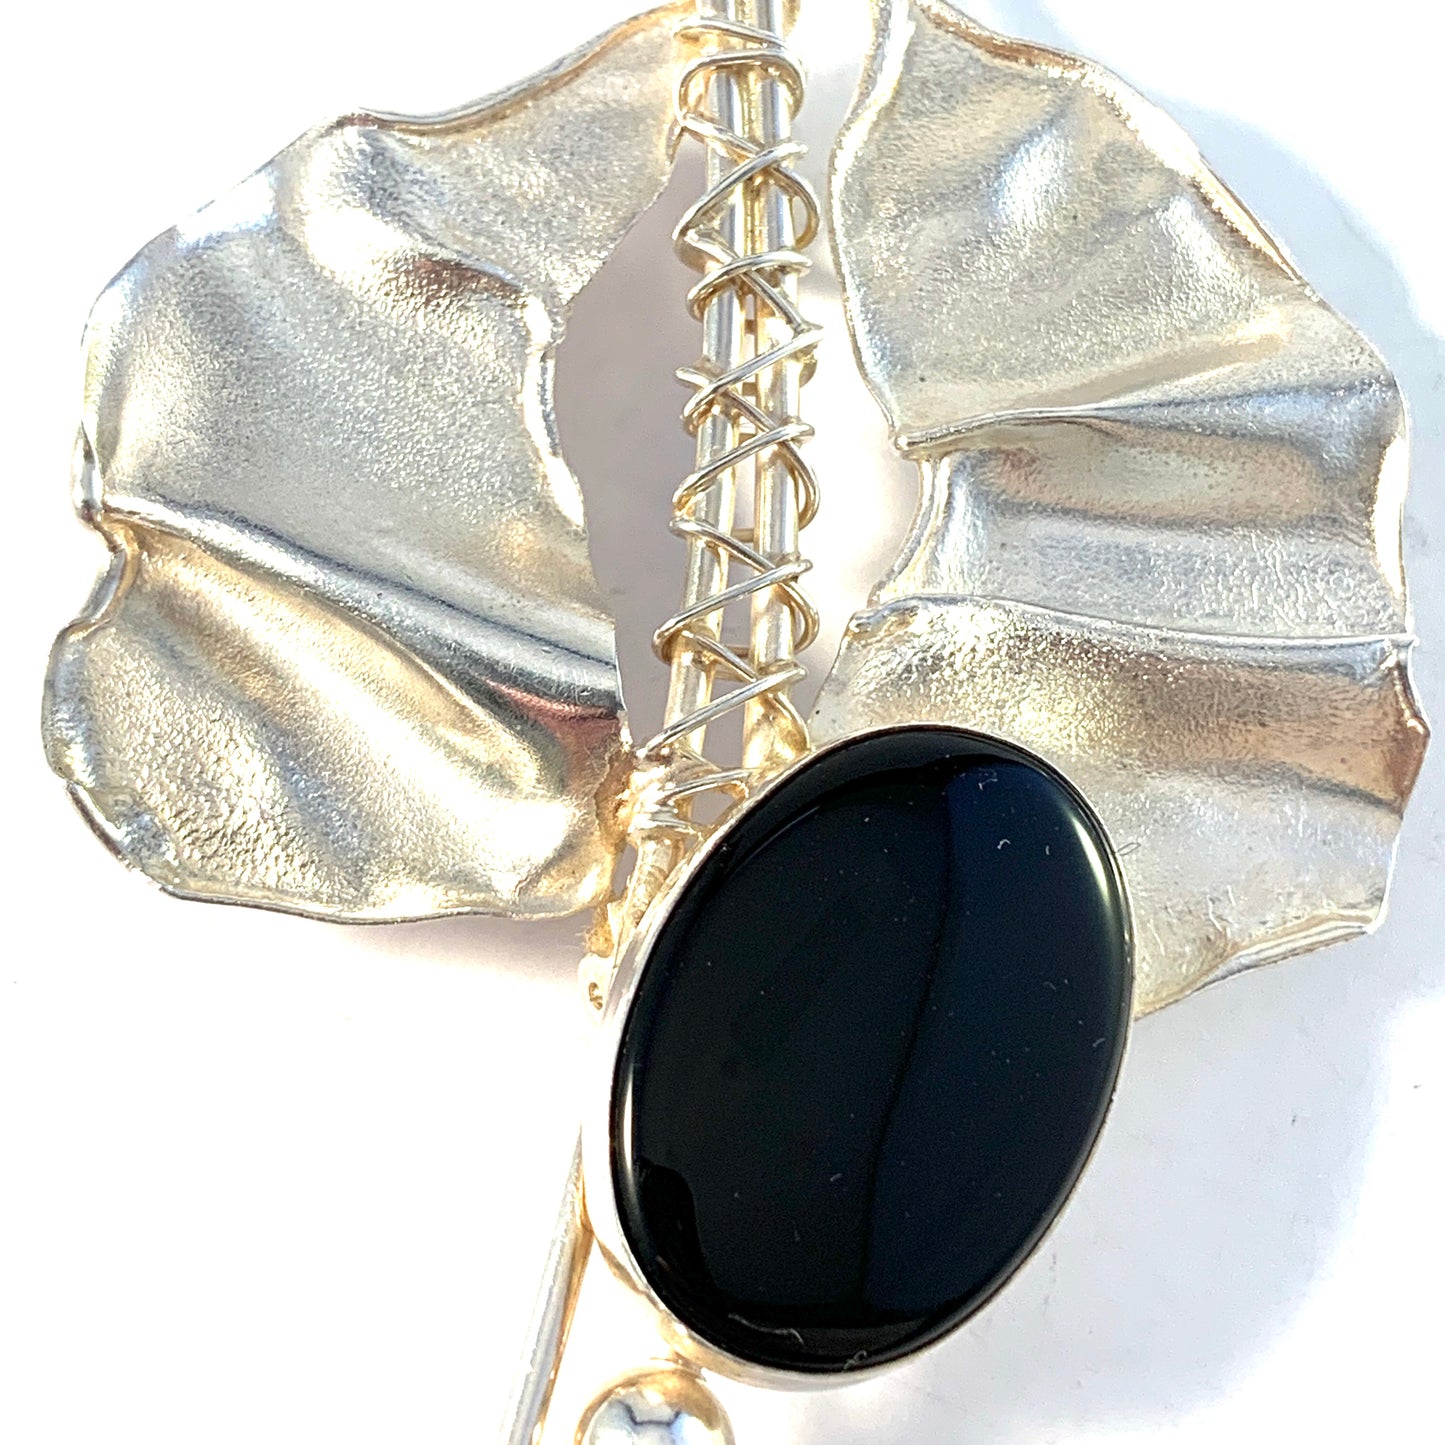 Avi Soffer, Israel Vintage Modernist Solid Silver Onyx Large Brooch Pendant. Signed